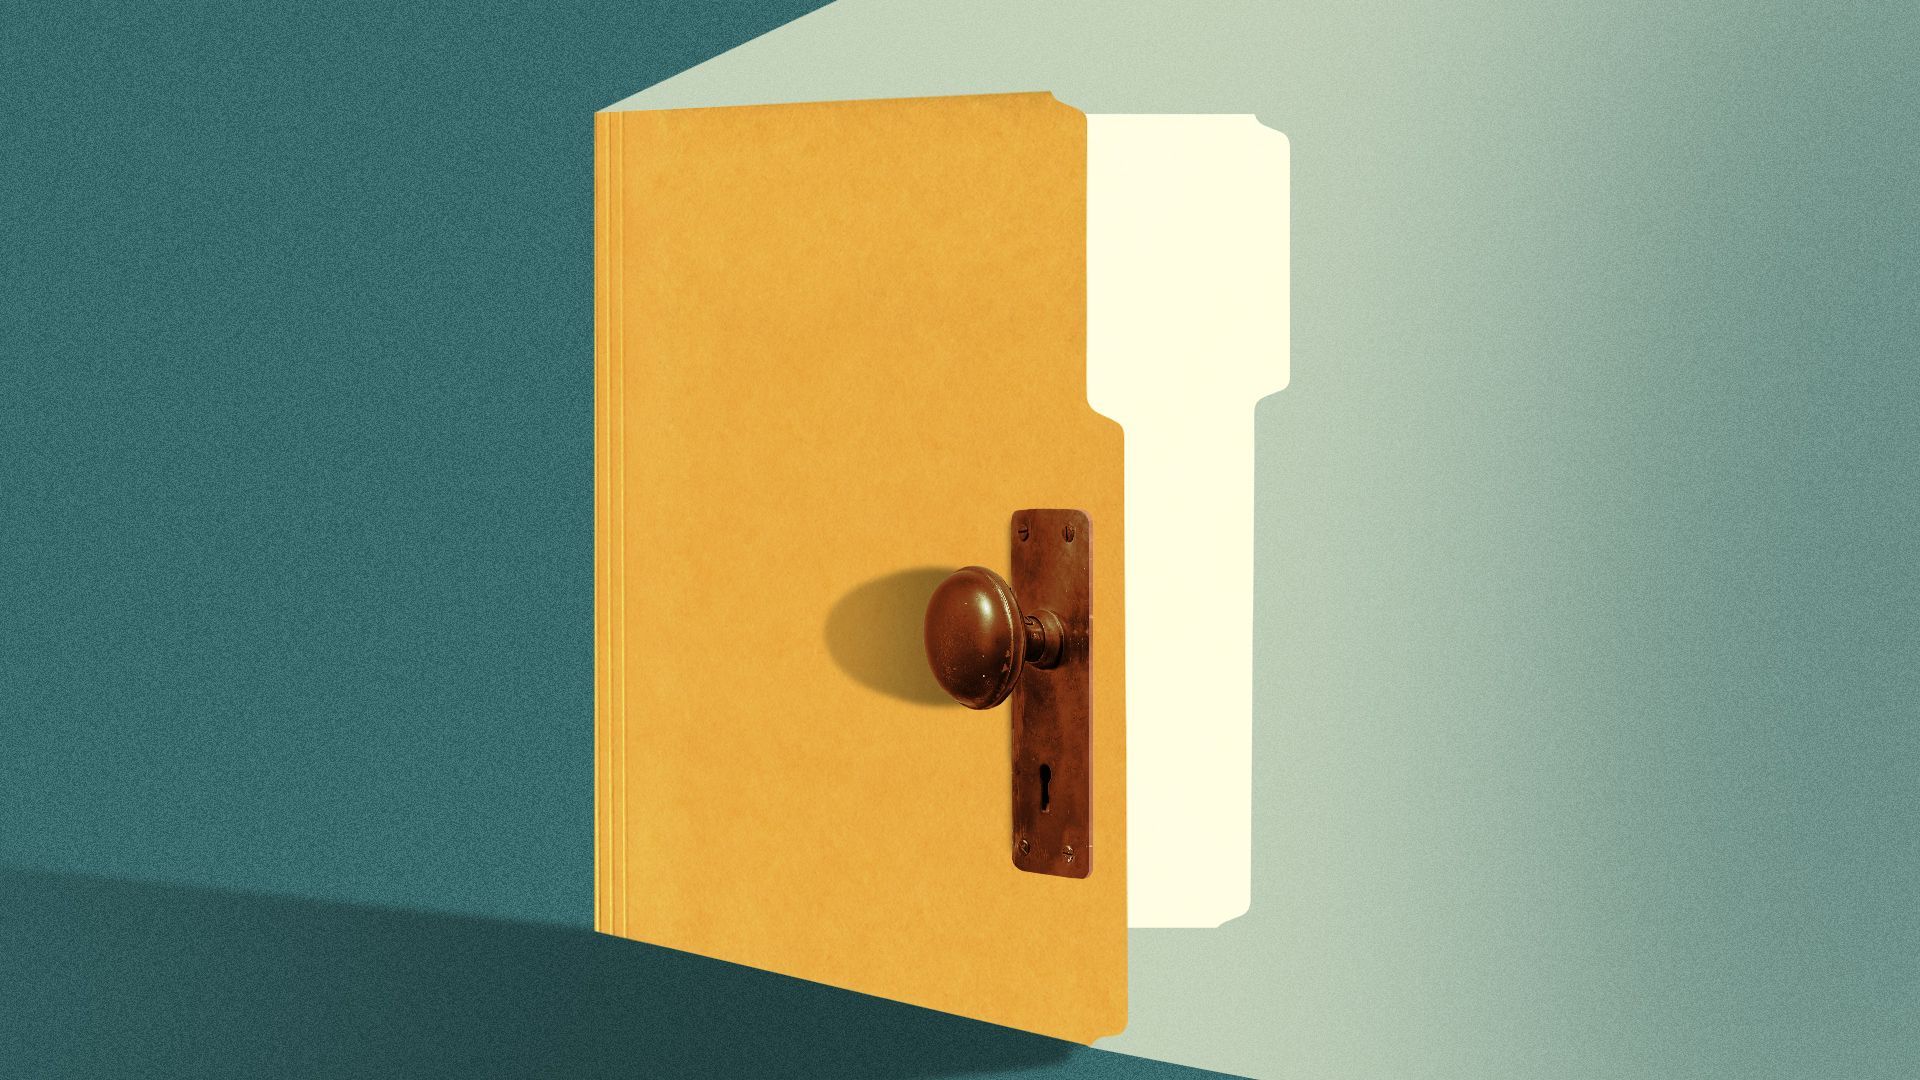 Illustration of a manila folder opening like a door.